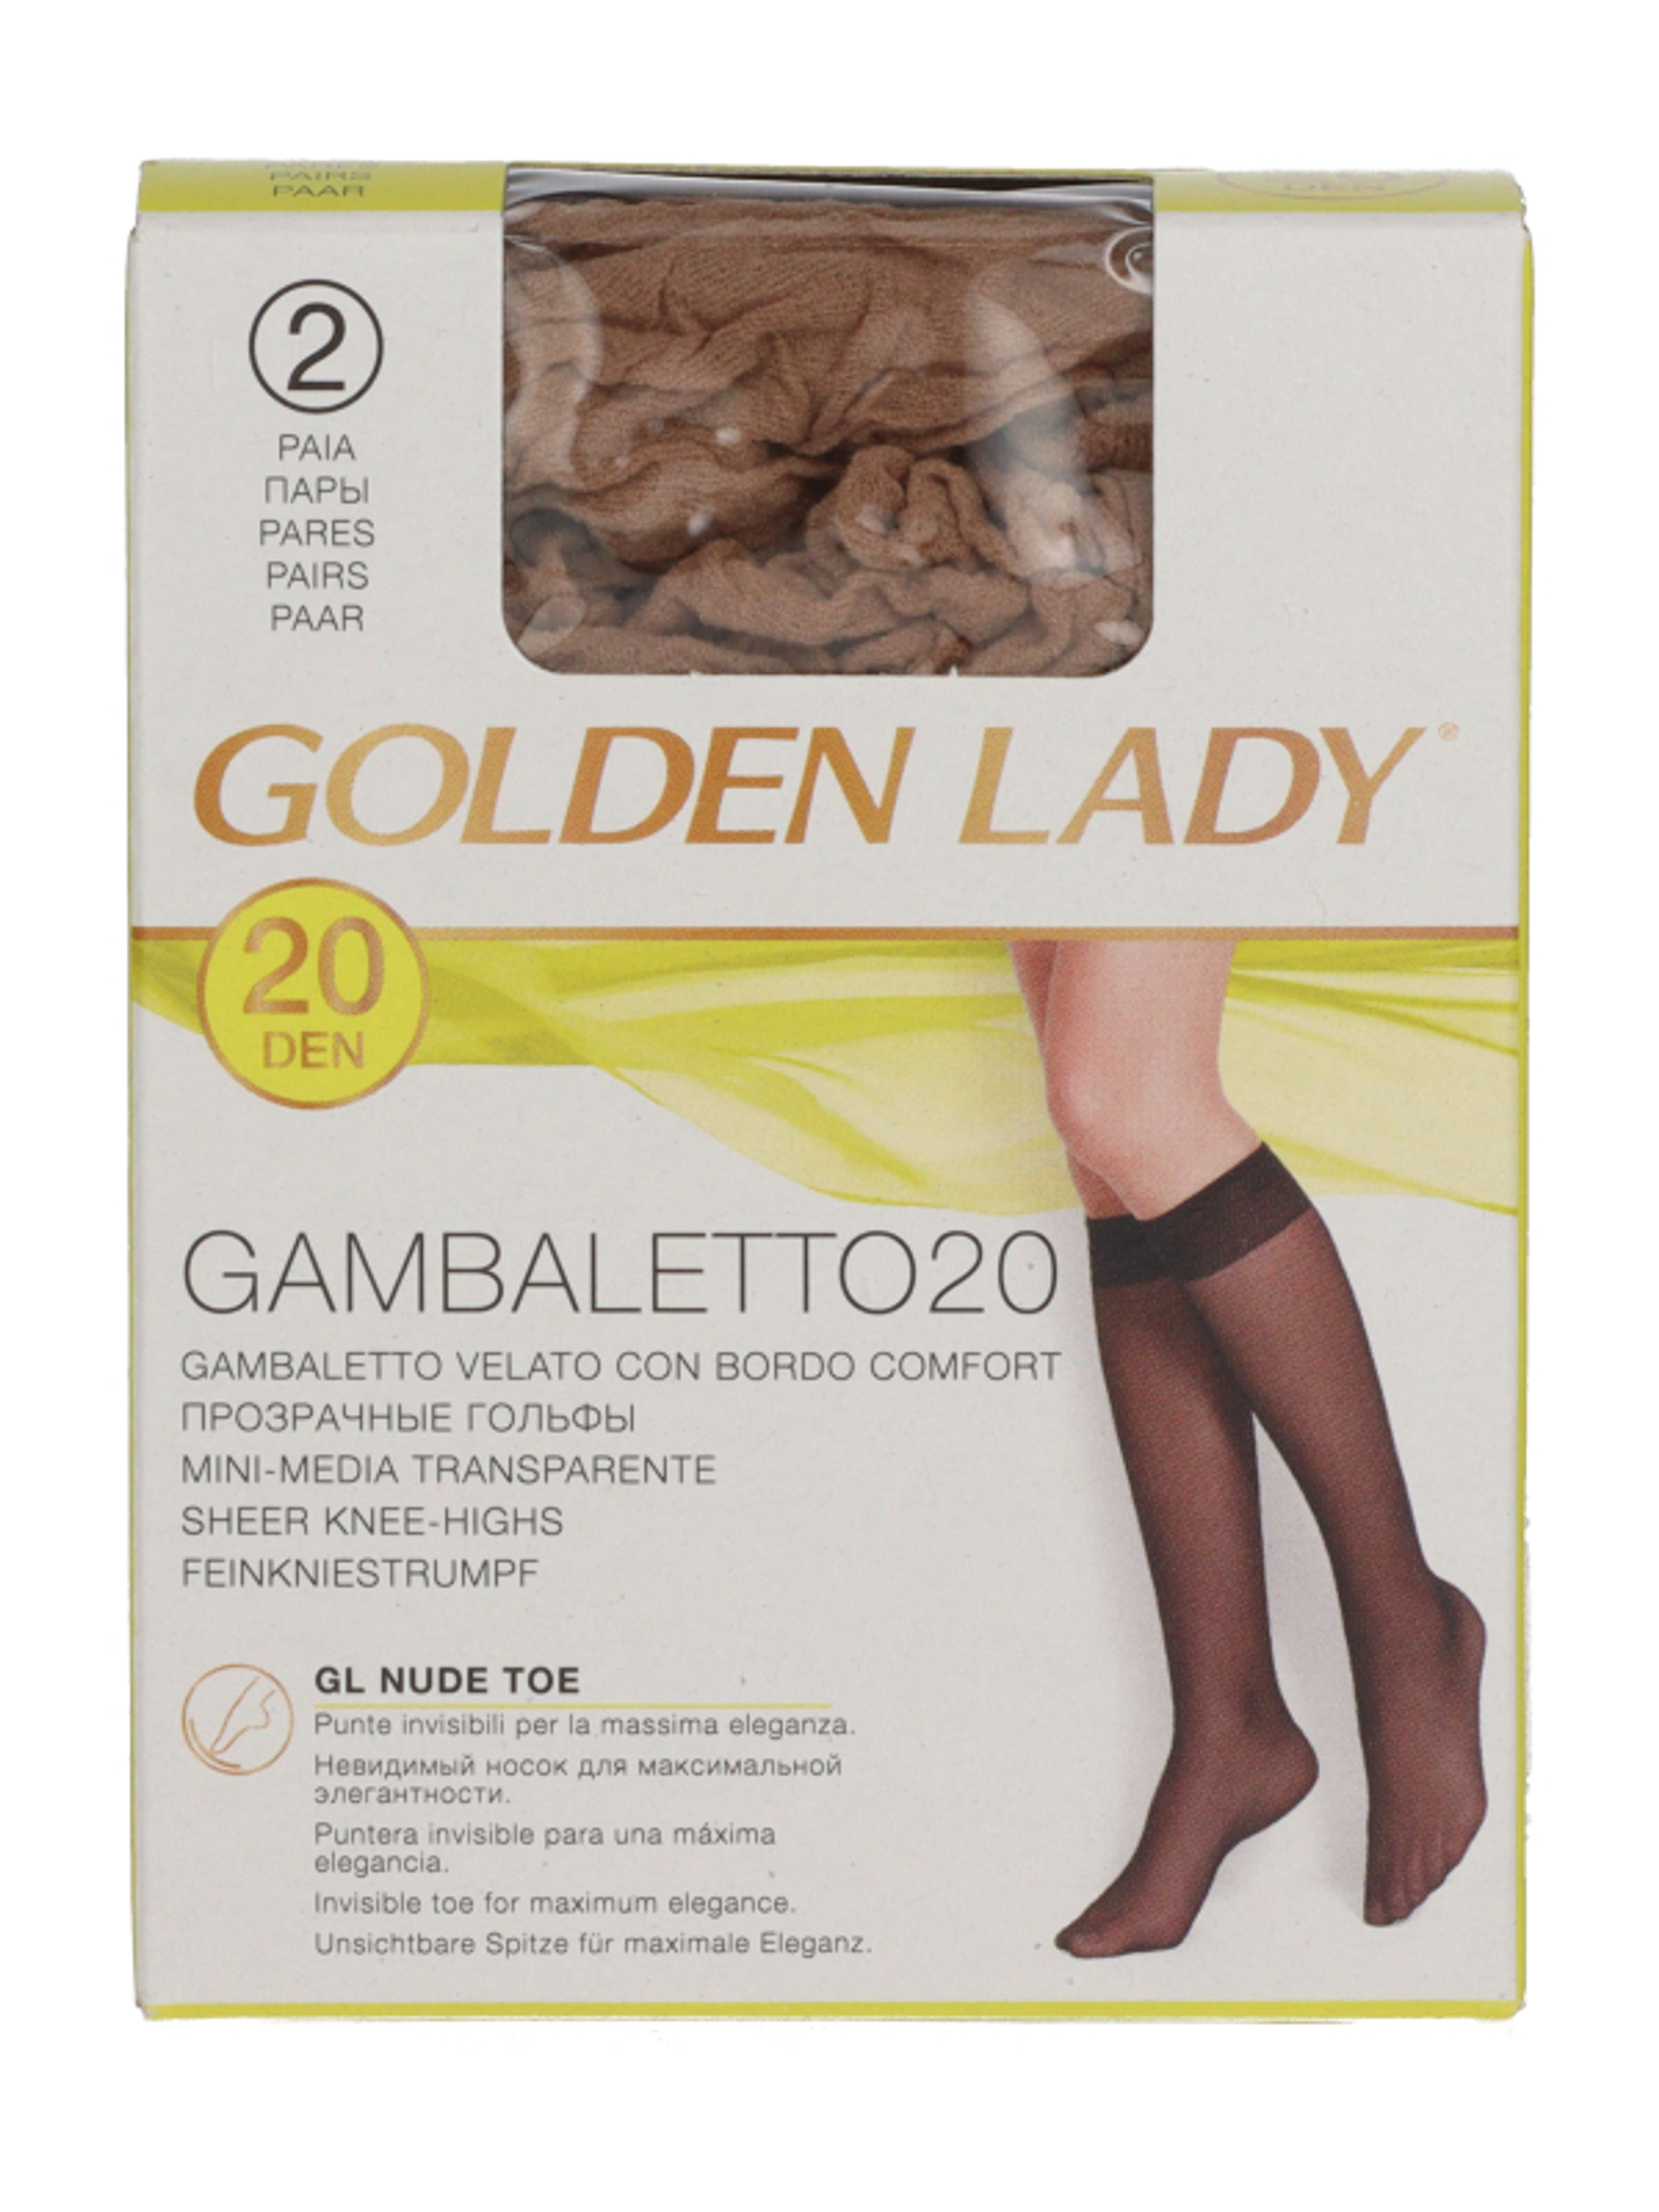 Golden Lady Gambaletto térdfix 20 Den Melon - 2 db